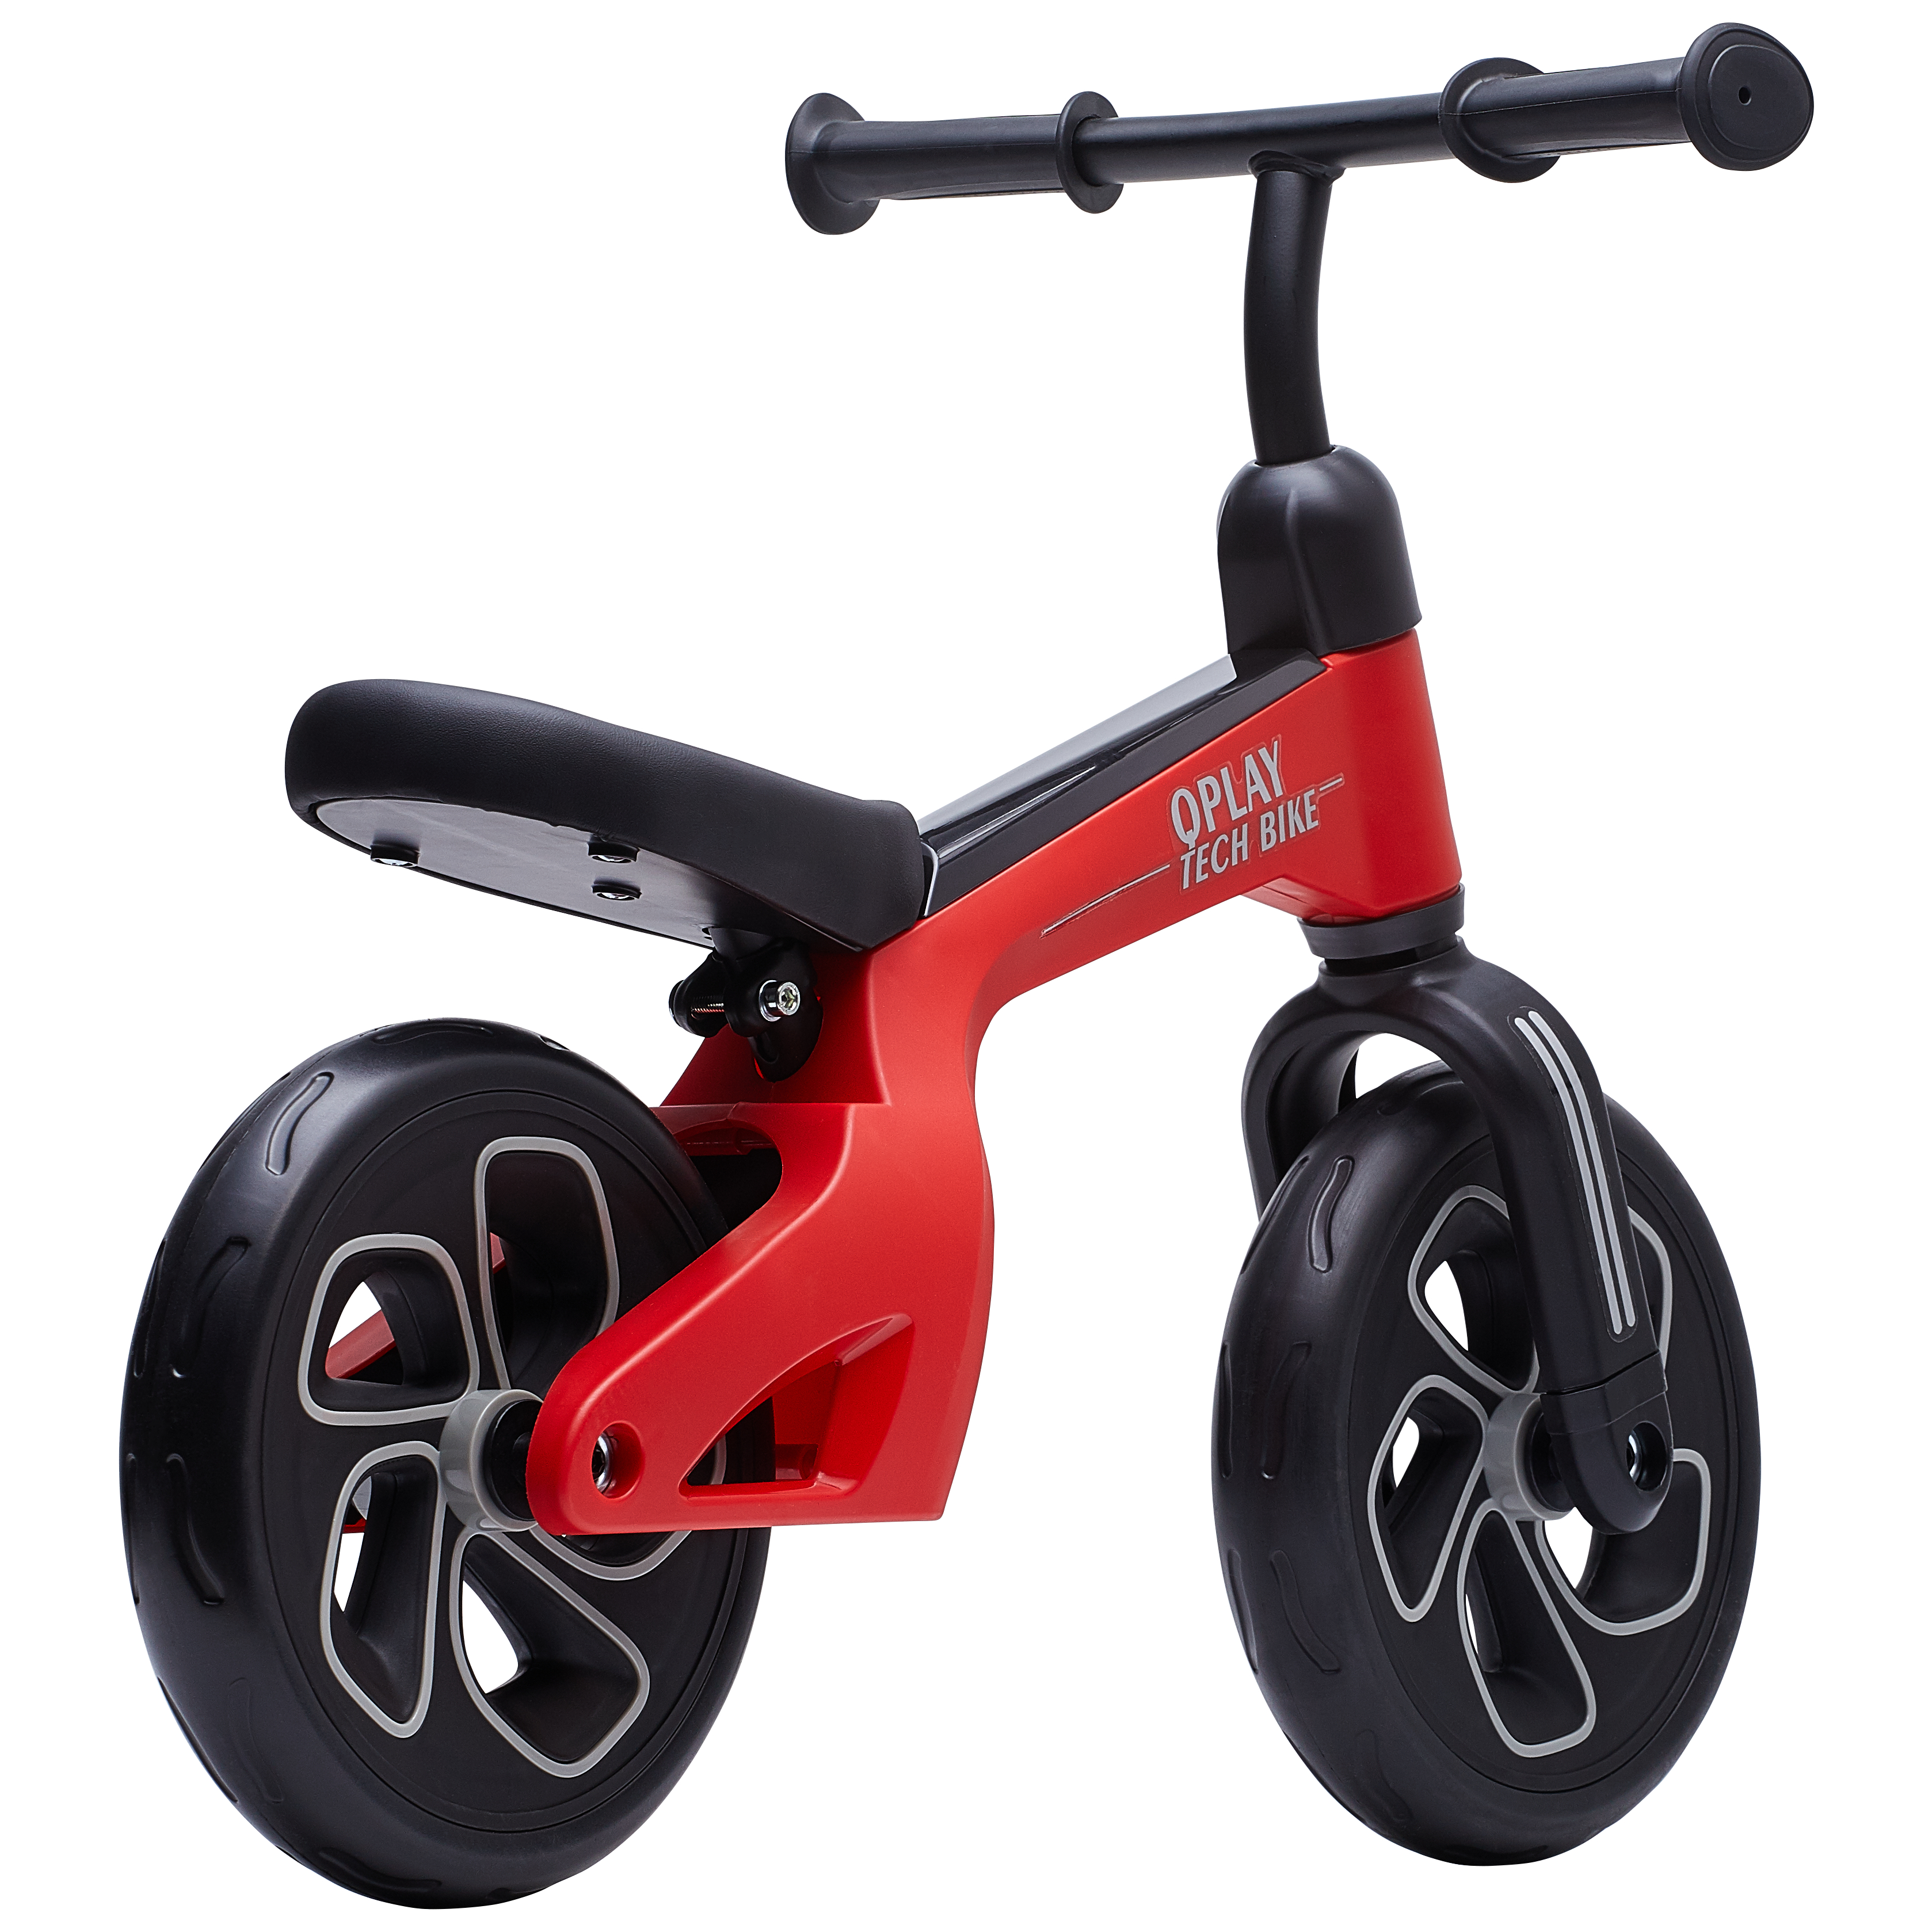 Біговел дитячий Qplay Tech Air, червоний (QP-Bike-001Red) - фото 2